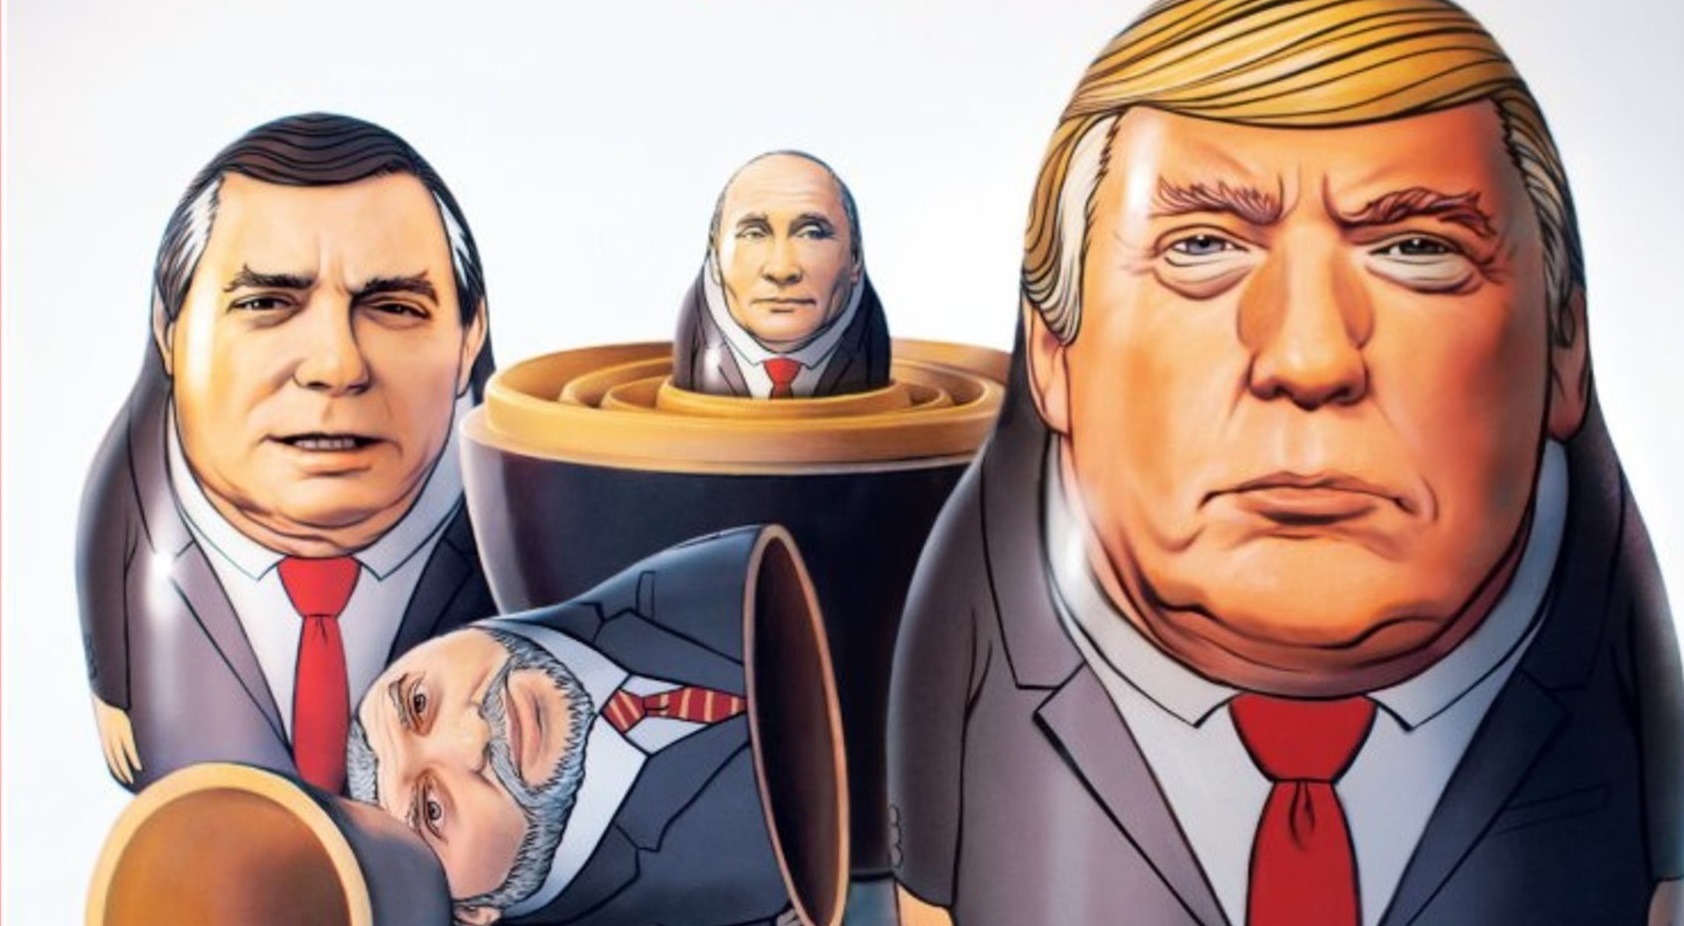 На обкладинці журналу Тime зобразили Трампа та Путіна у вигляді матрьошок